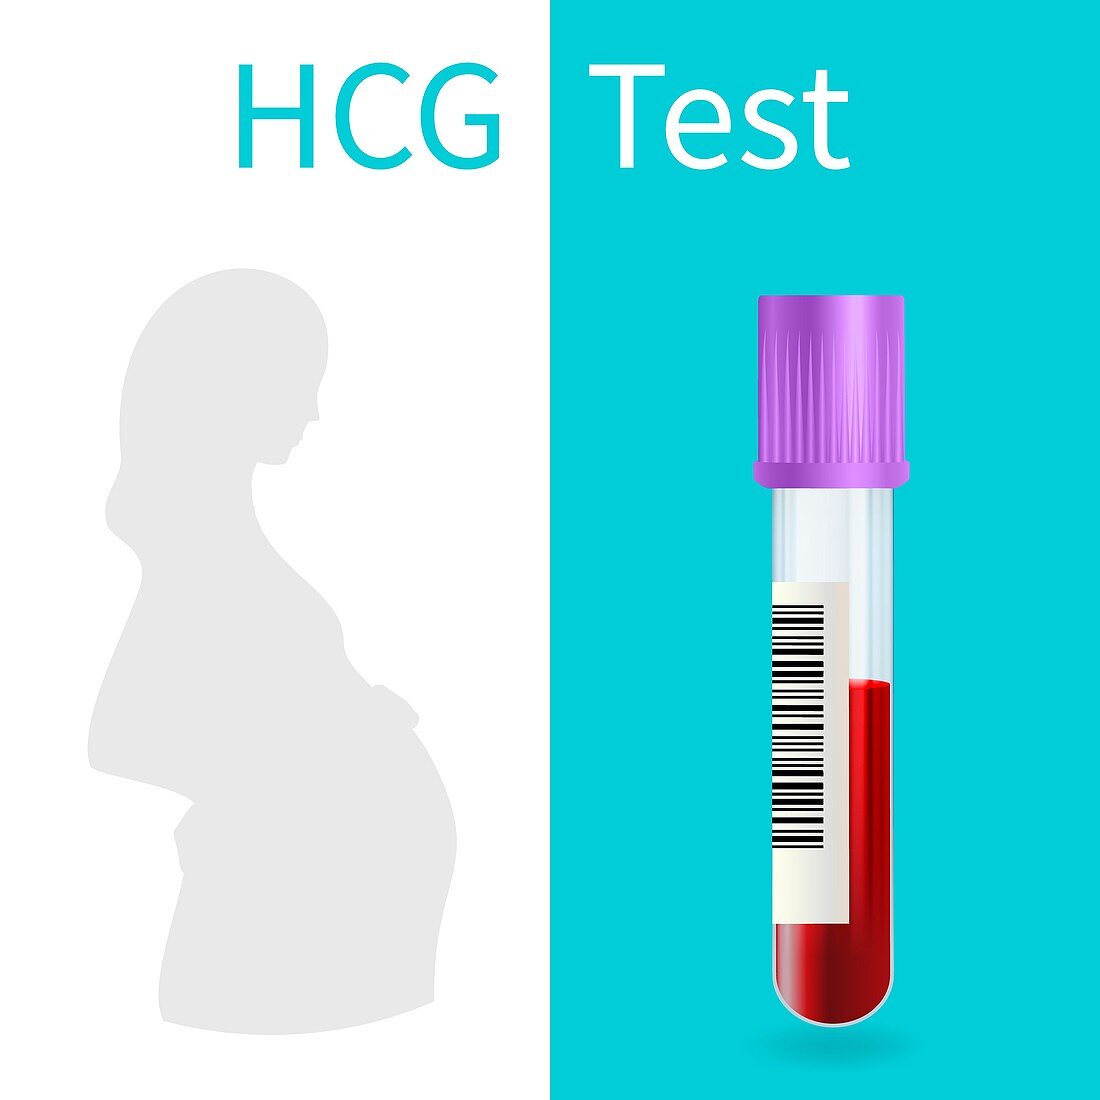 Blood pregnancy test, illustration